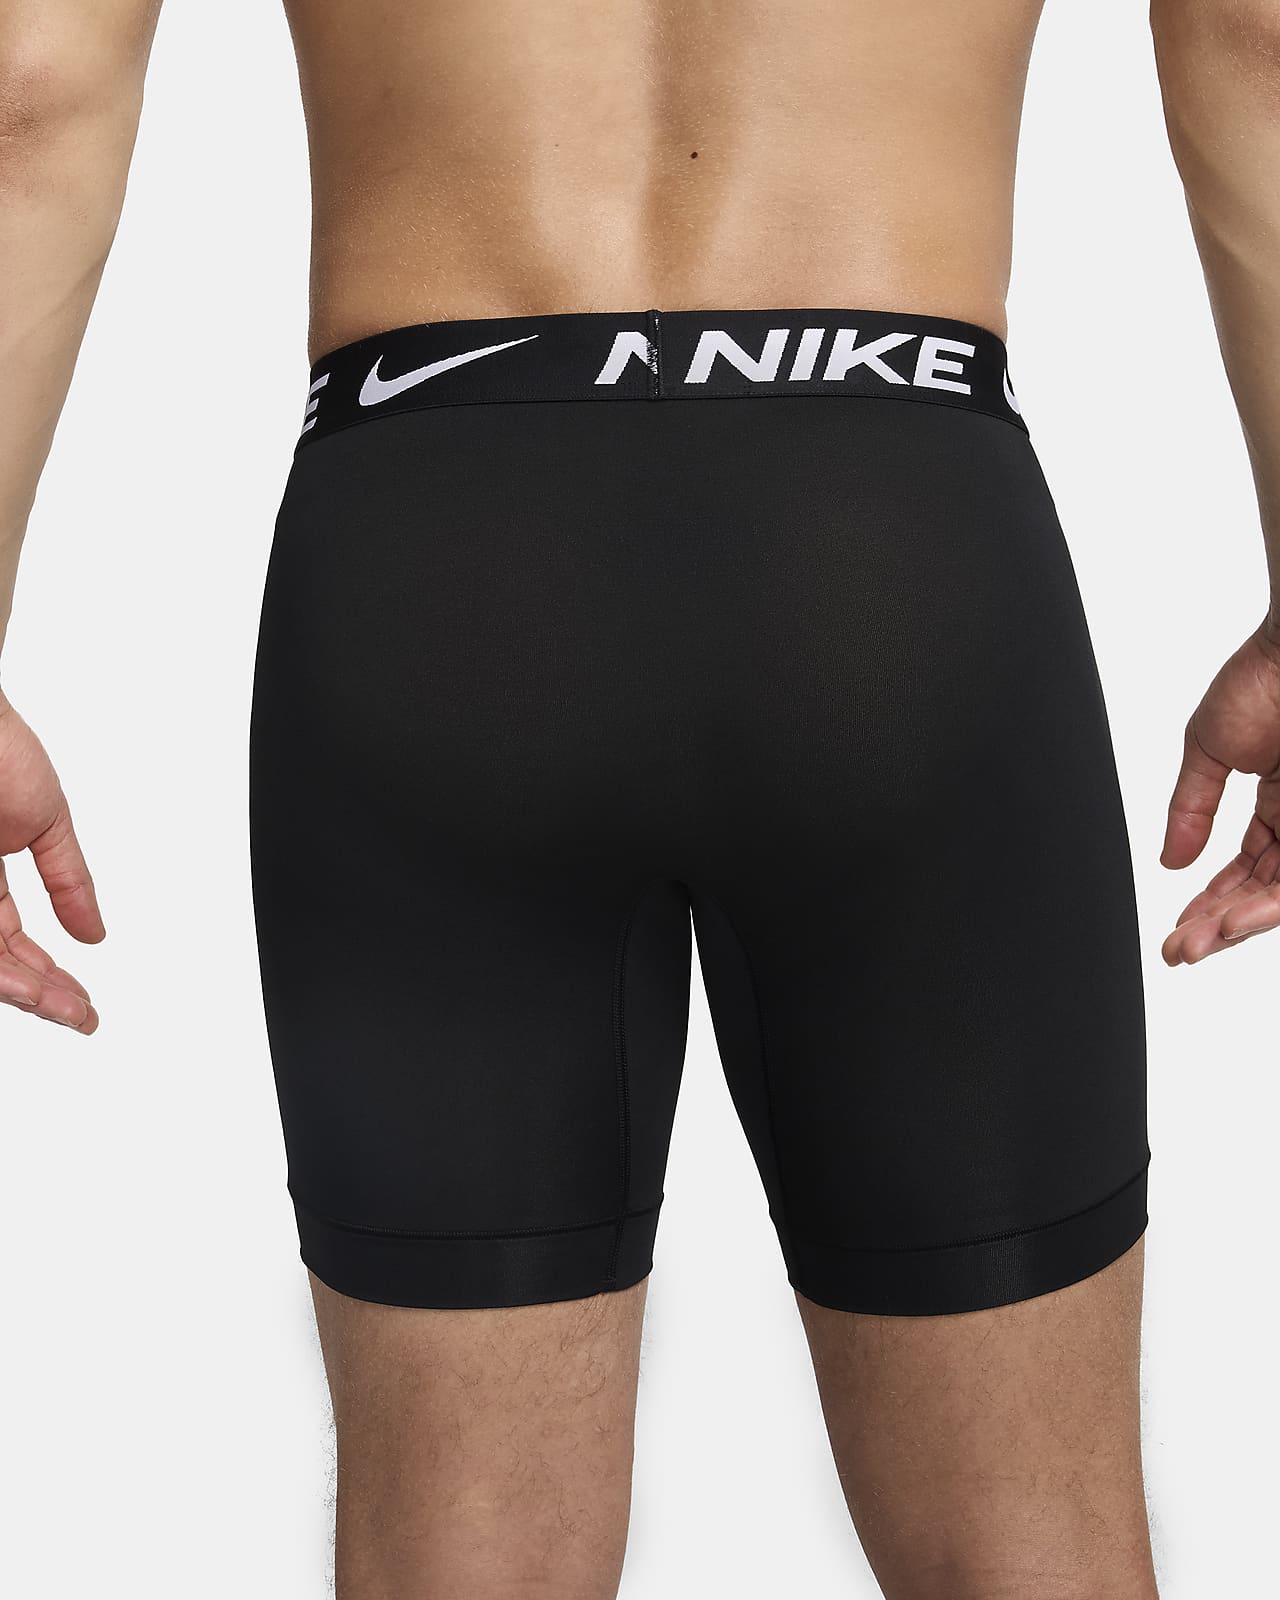 Nike Flex Micro Dri Fit Boxer Briefs 3-Pack Mens Size Small Black